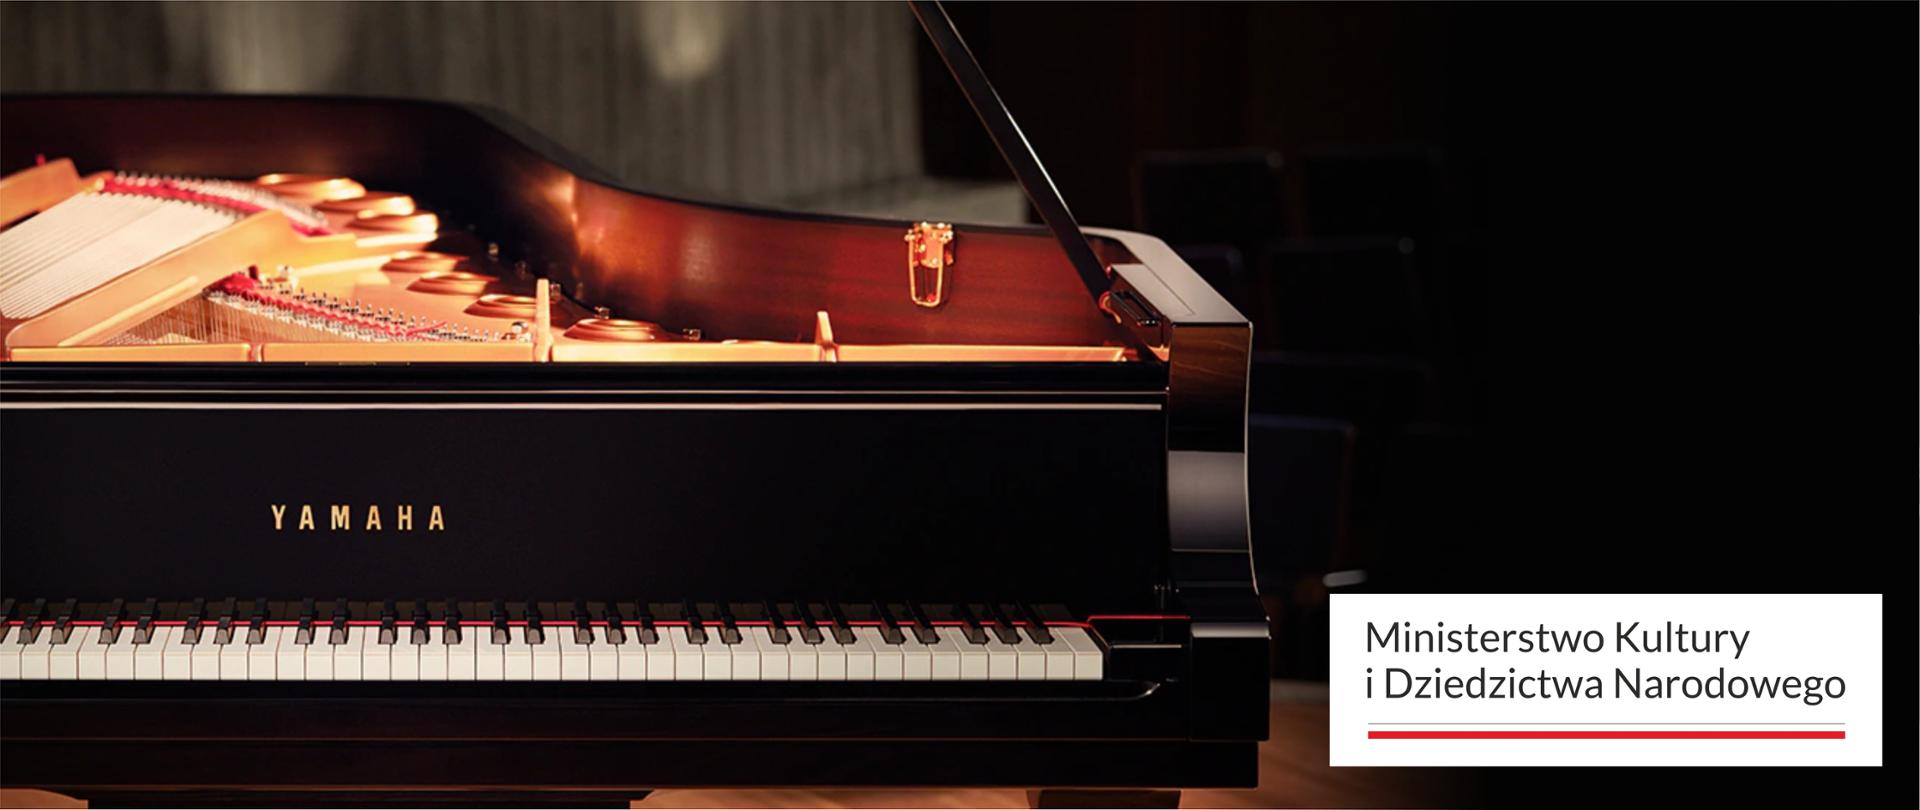 Grafika przedstawia fortepian firmy Yamaha wraz z logotypem MKiDN